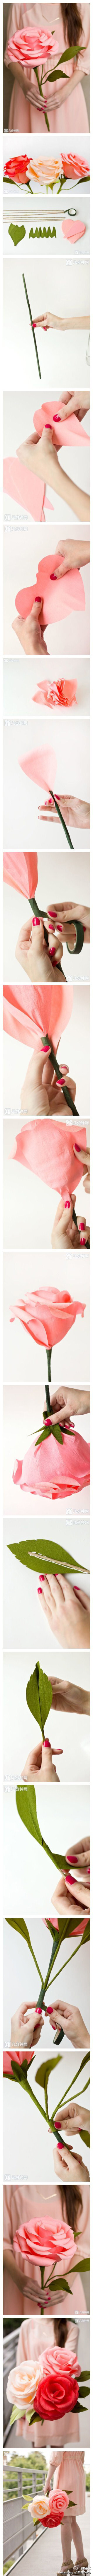 教你手工制作巨型纸玫瑰，很漂亮，很不错哦~[不做懒女人@热手工 ]